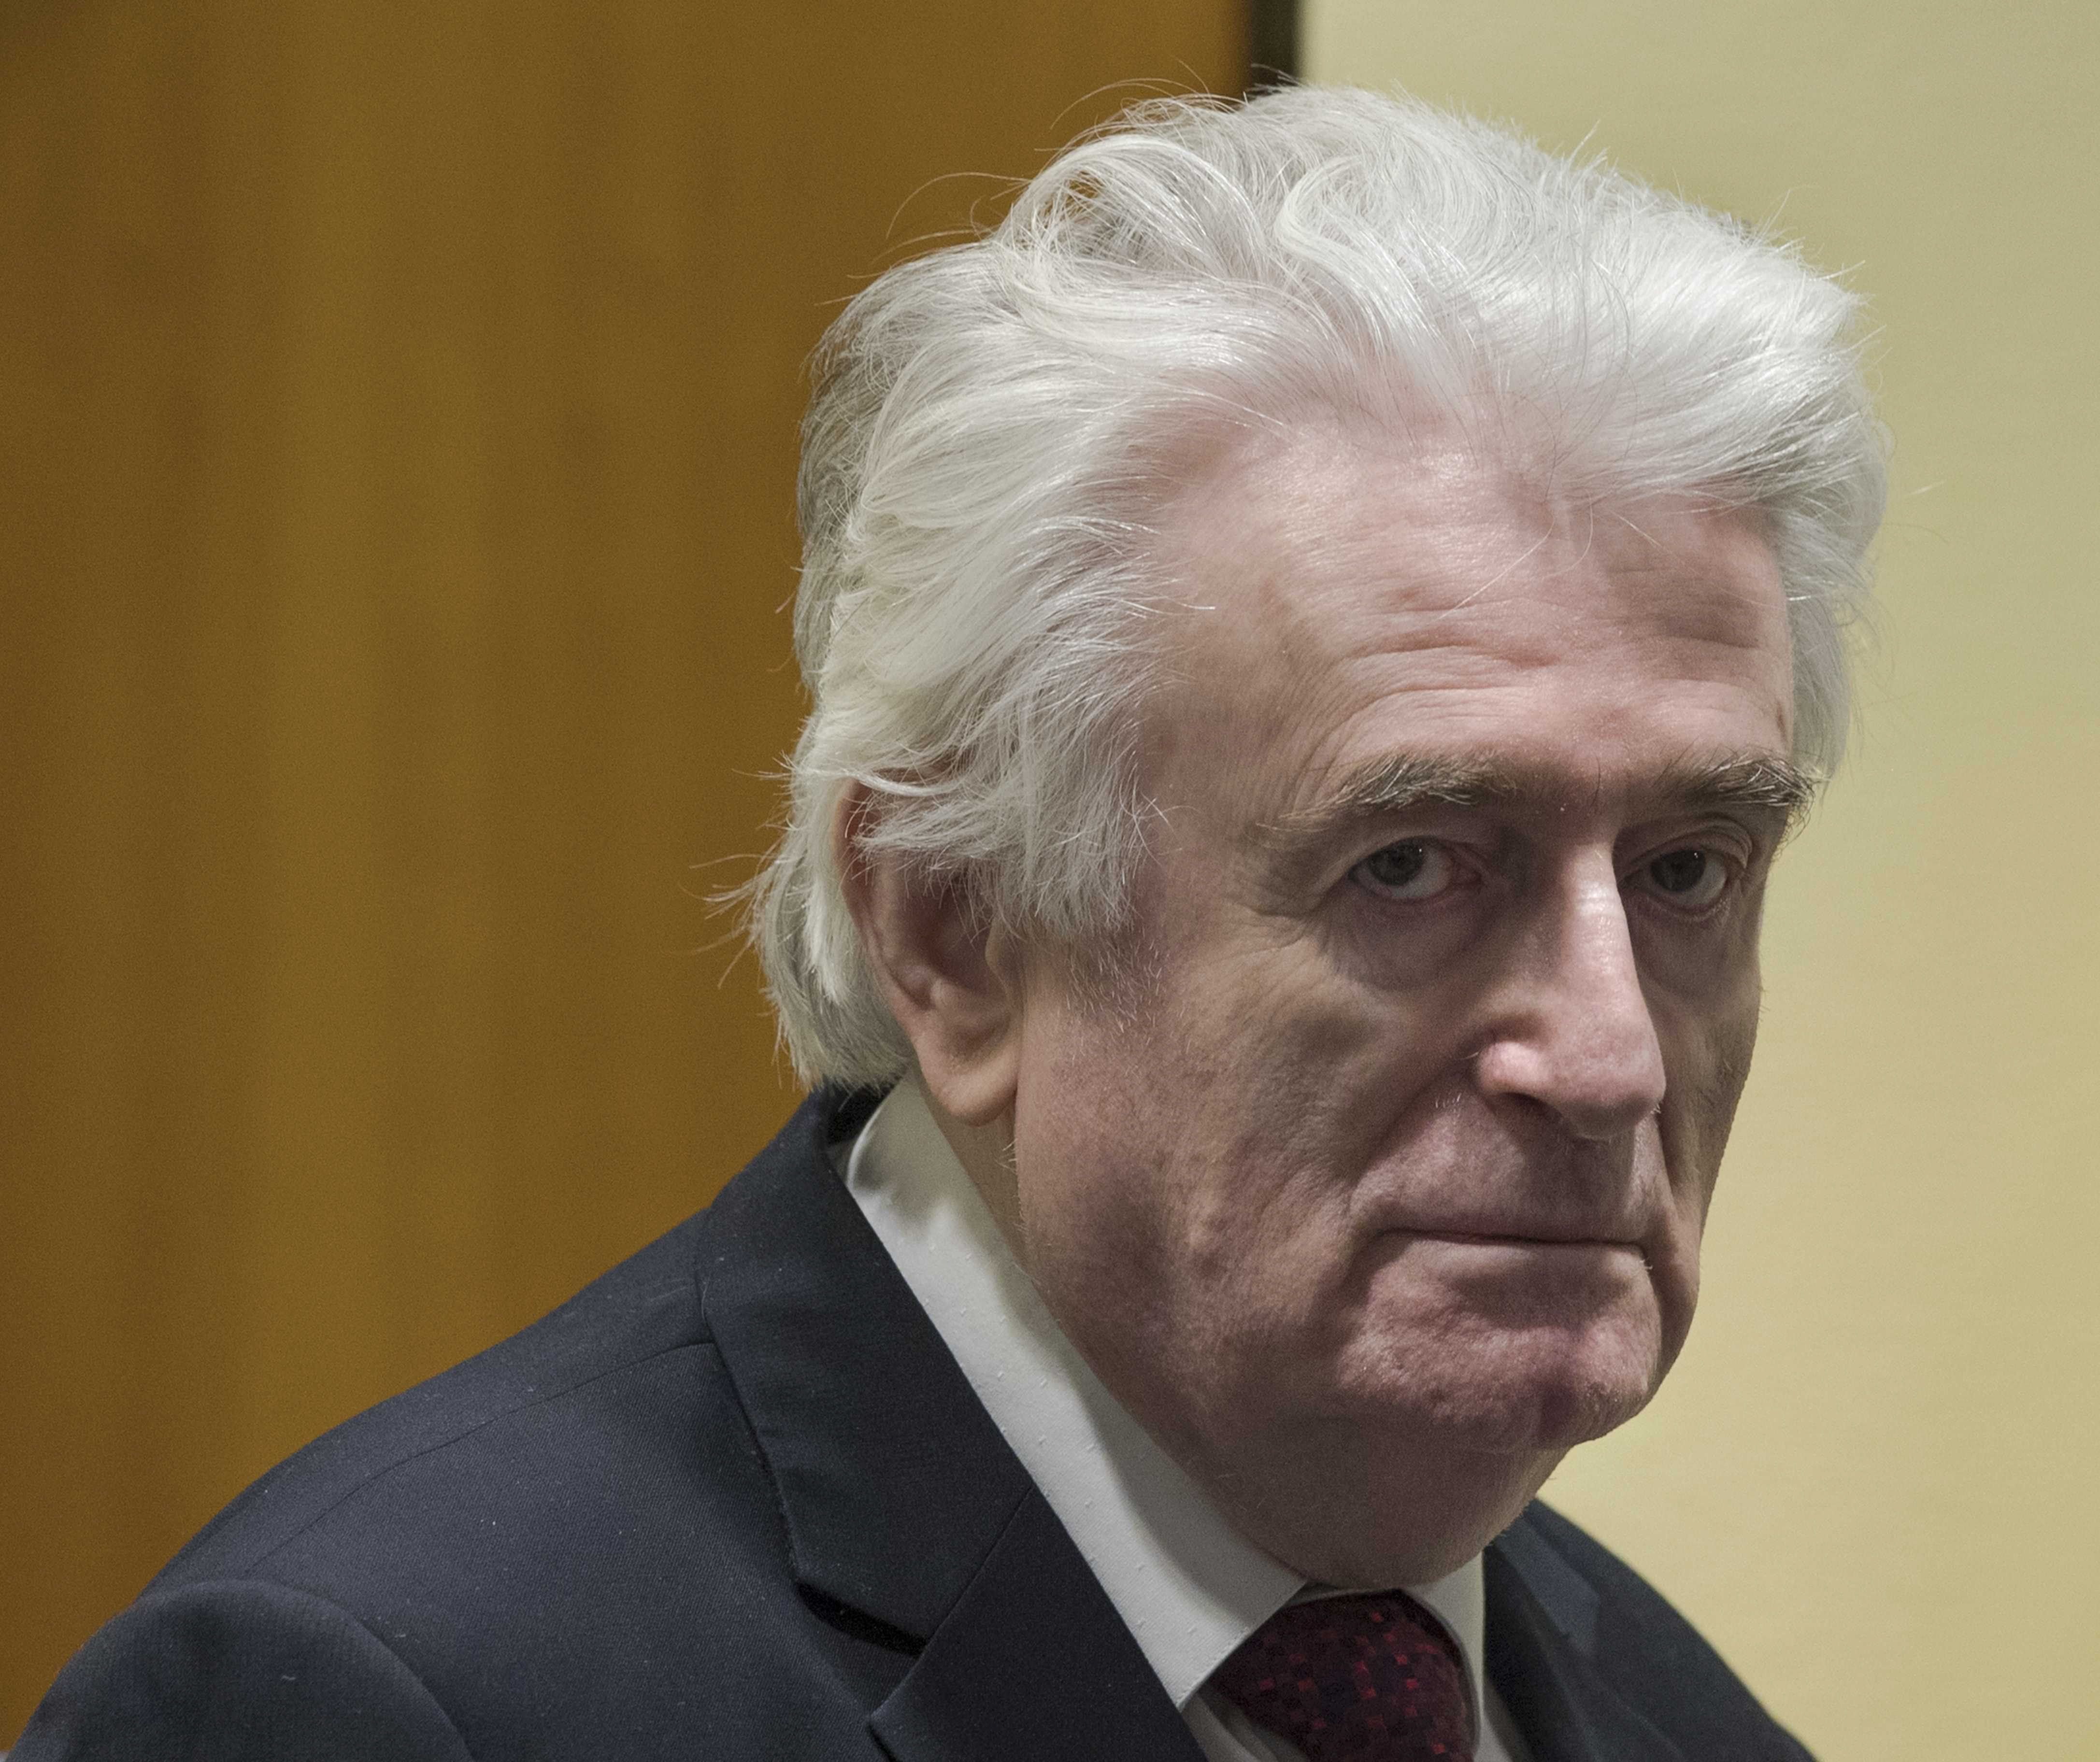 L'Haia eleva a cadena perpètua la condemna a Karadzic per la guerra de Bòsnia